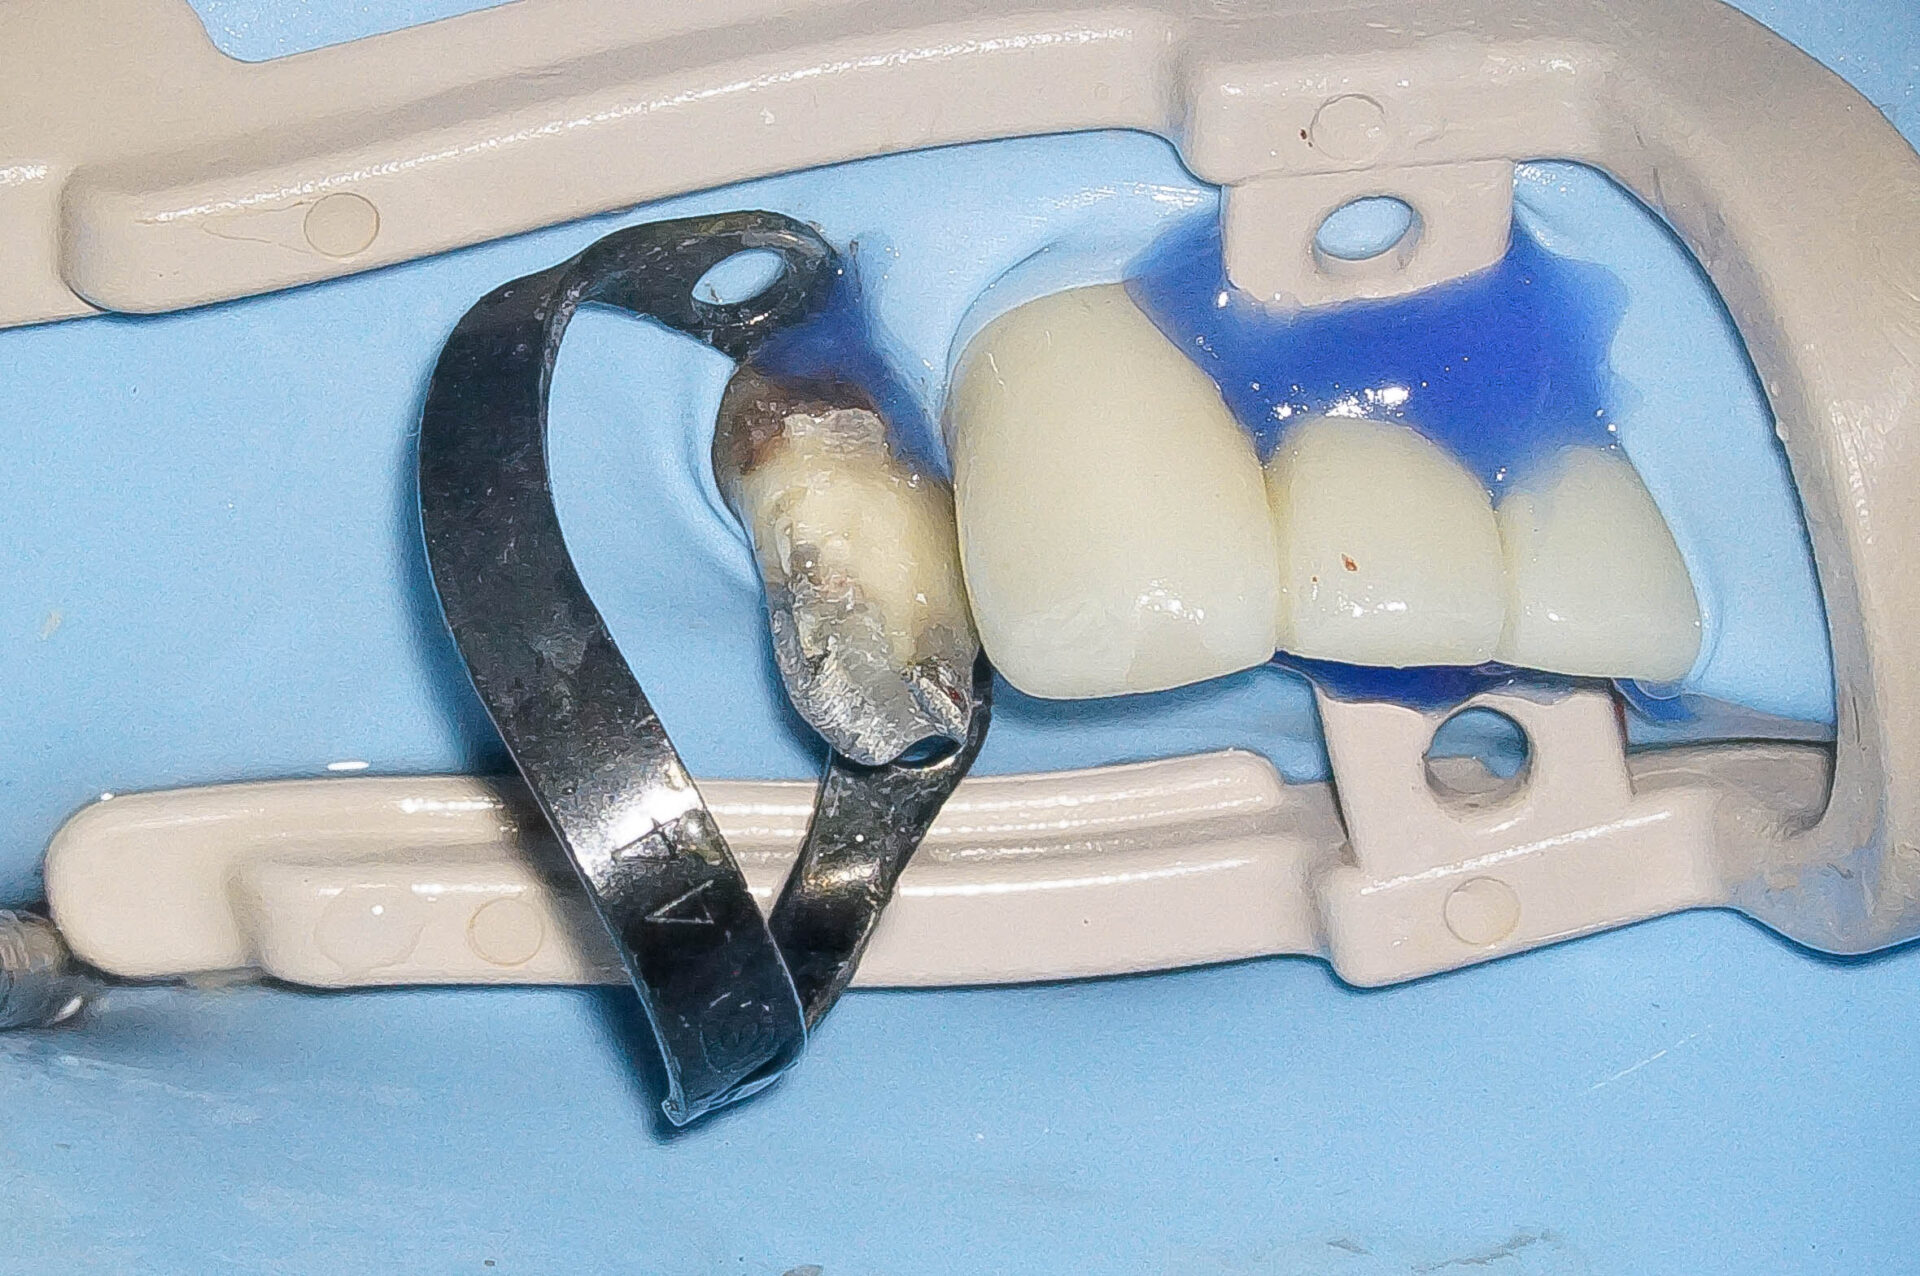 精密根管治療にて抜歯を回避した症例 3治療方法03